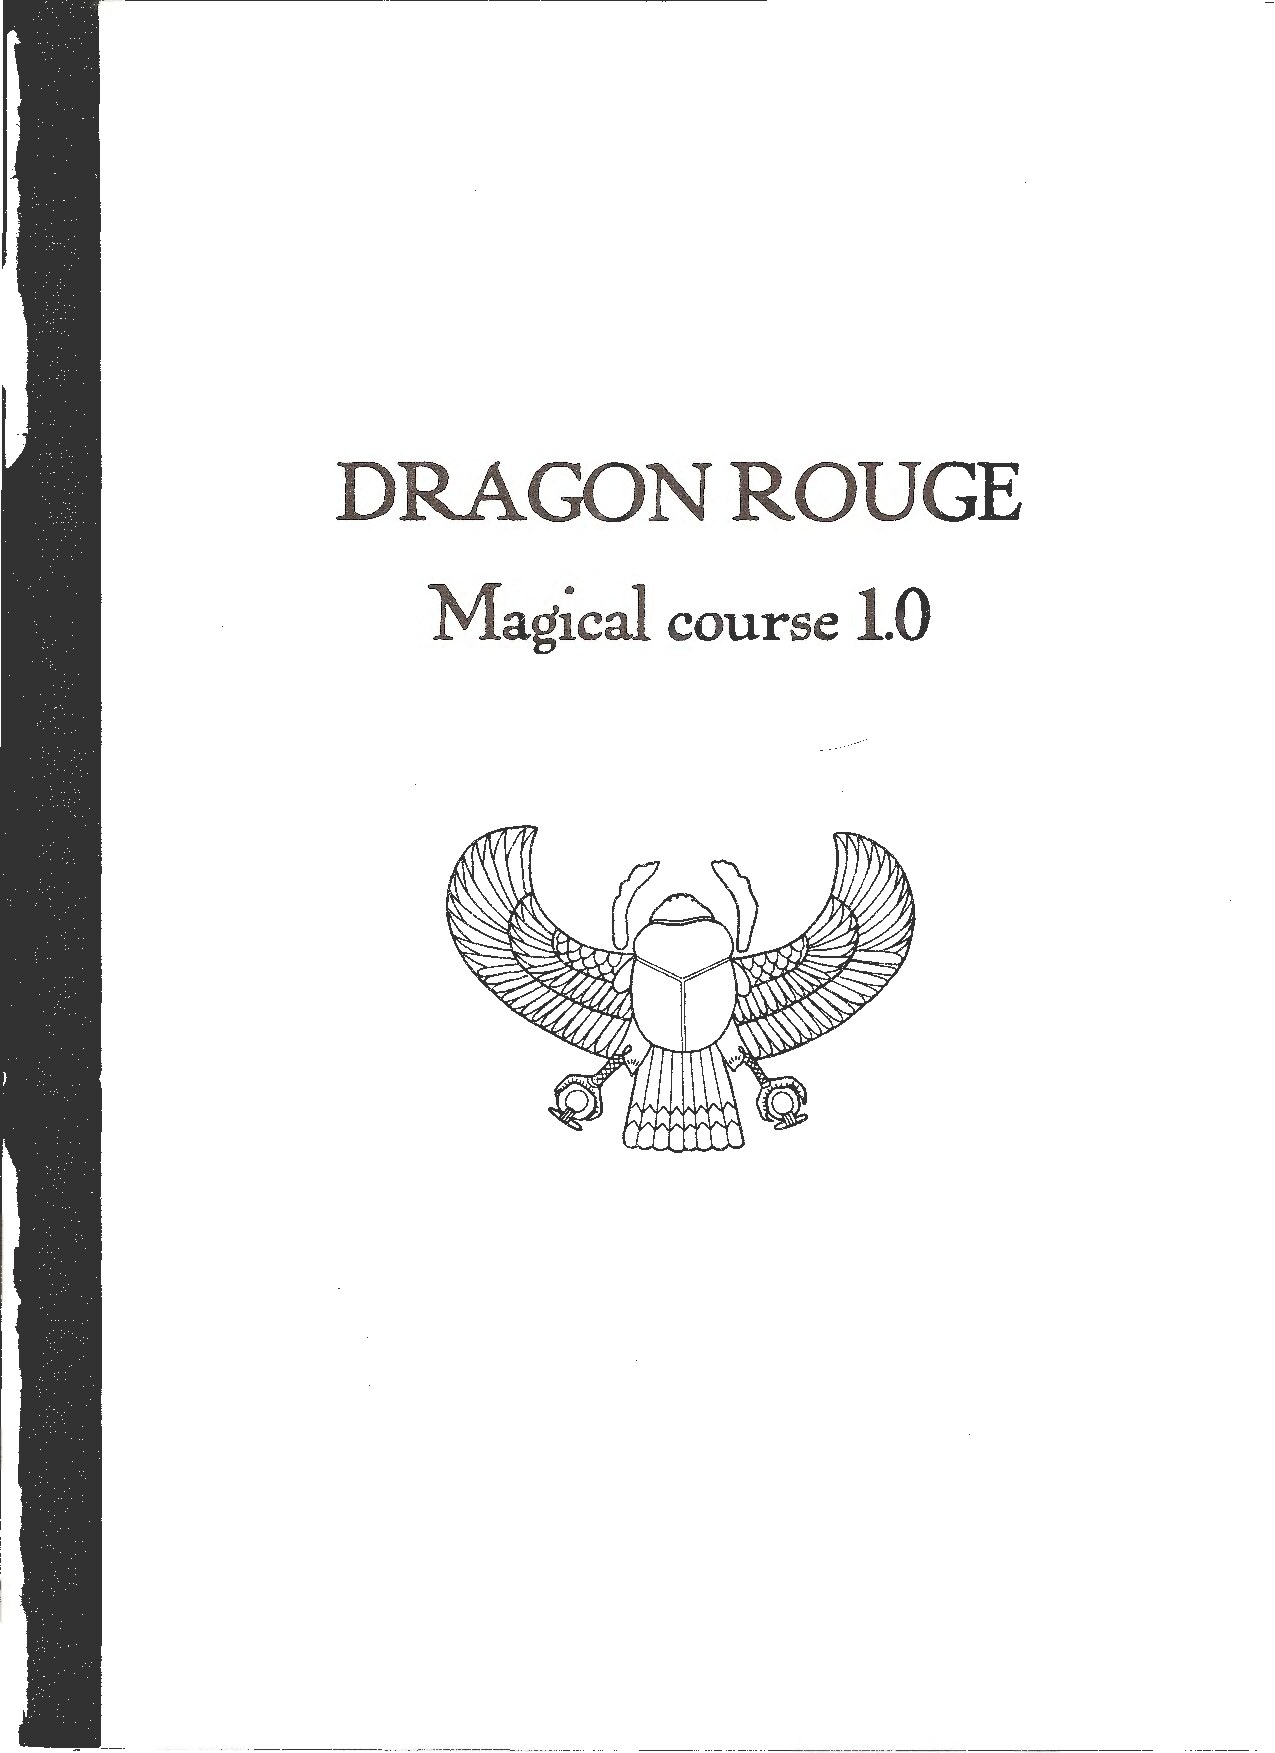 Magical Course 1.0